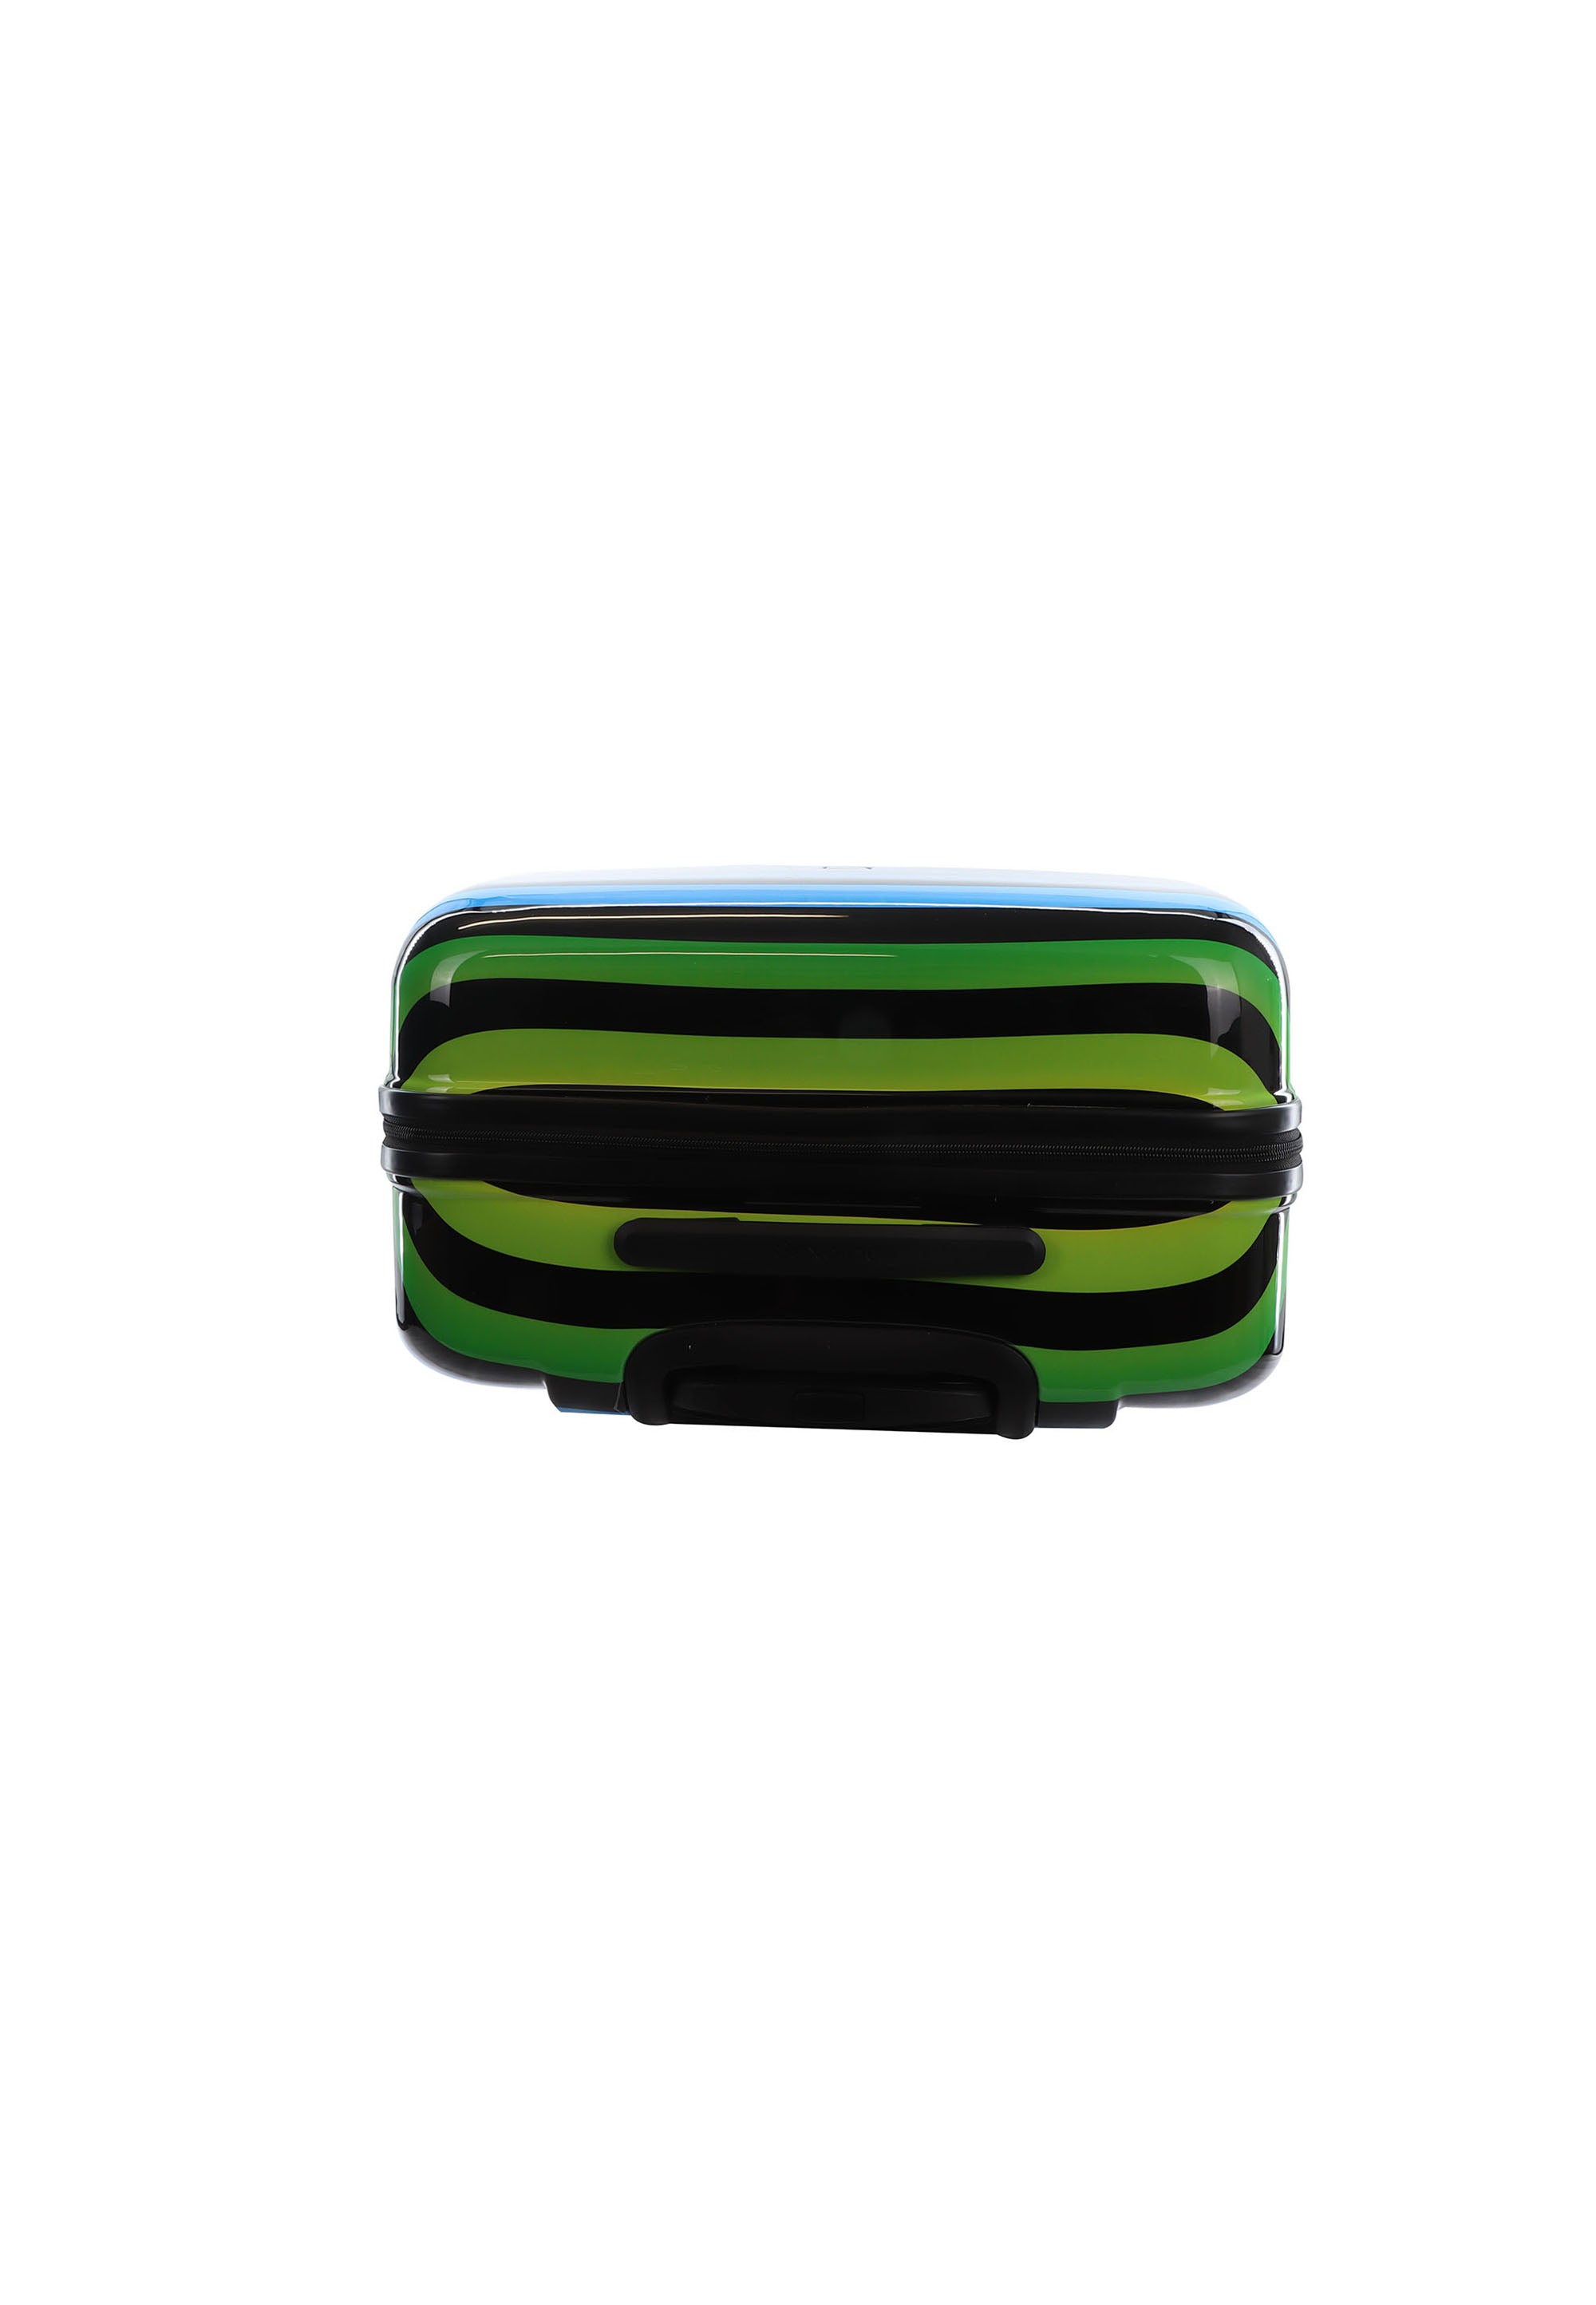 Hartschalenkoffer mit Color Strip Trolley Gr. L Reisegepäck von Saxoline